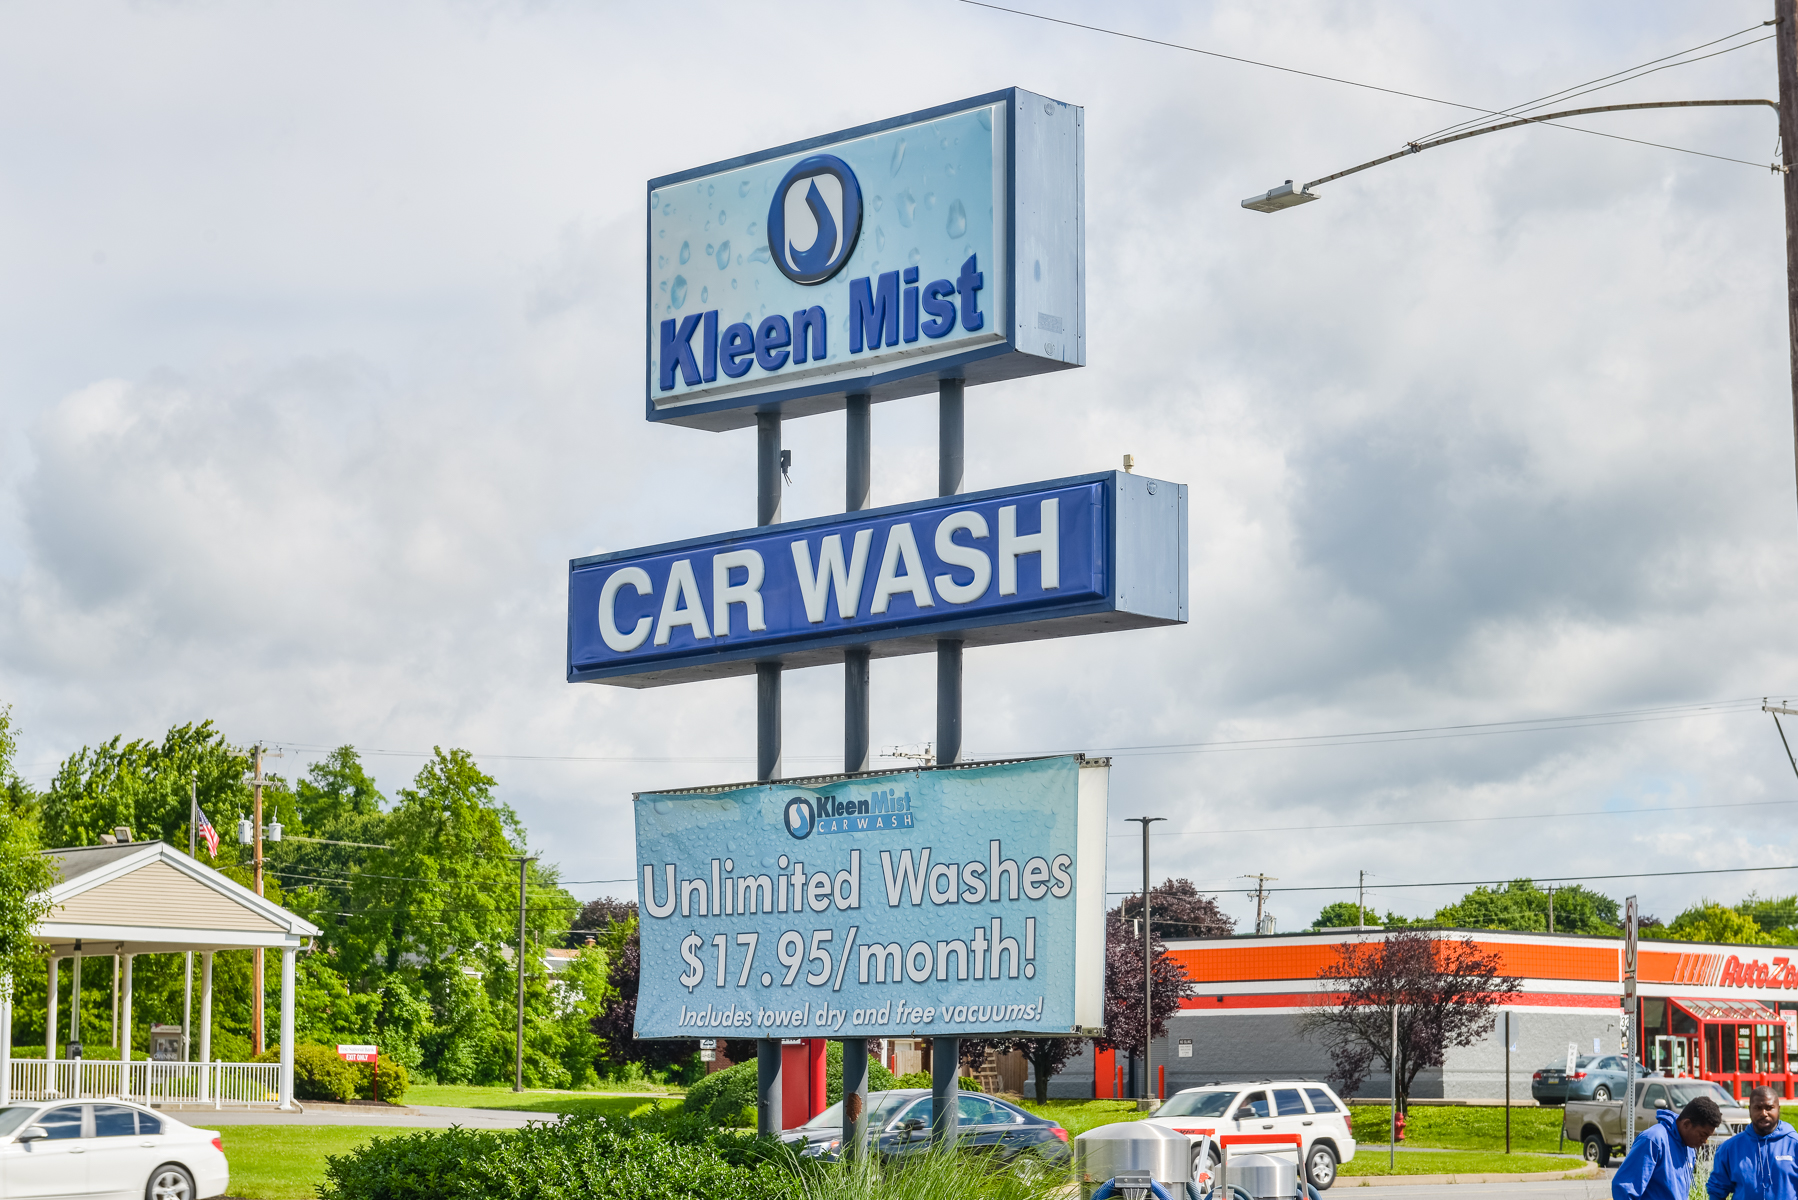 Kleen Mist Car Wash